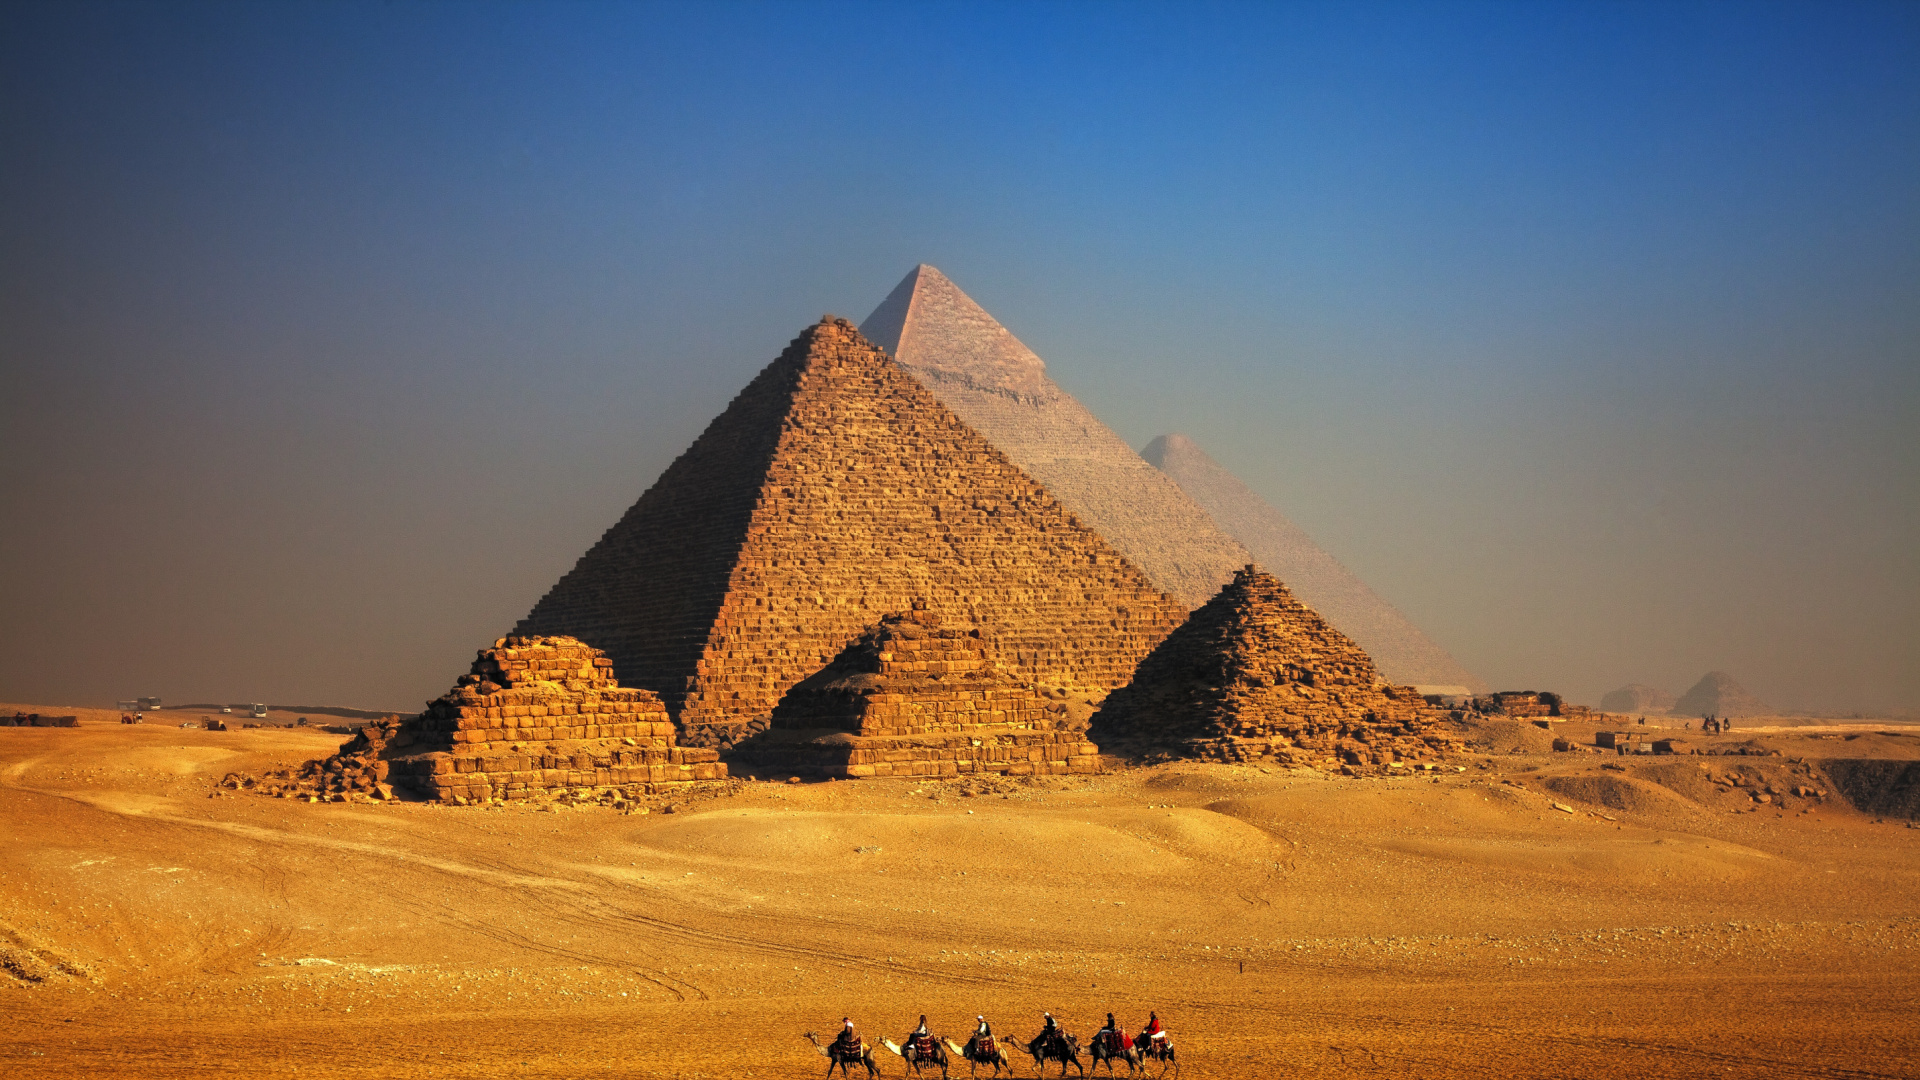 吉萨的大狮身人面像, 金字塔, 埃及金字塔, 旅游景点, 纪念碑 壁纸 1920x1080 允许